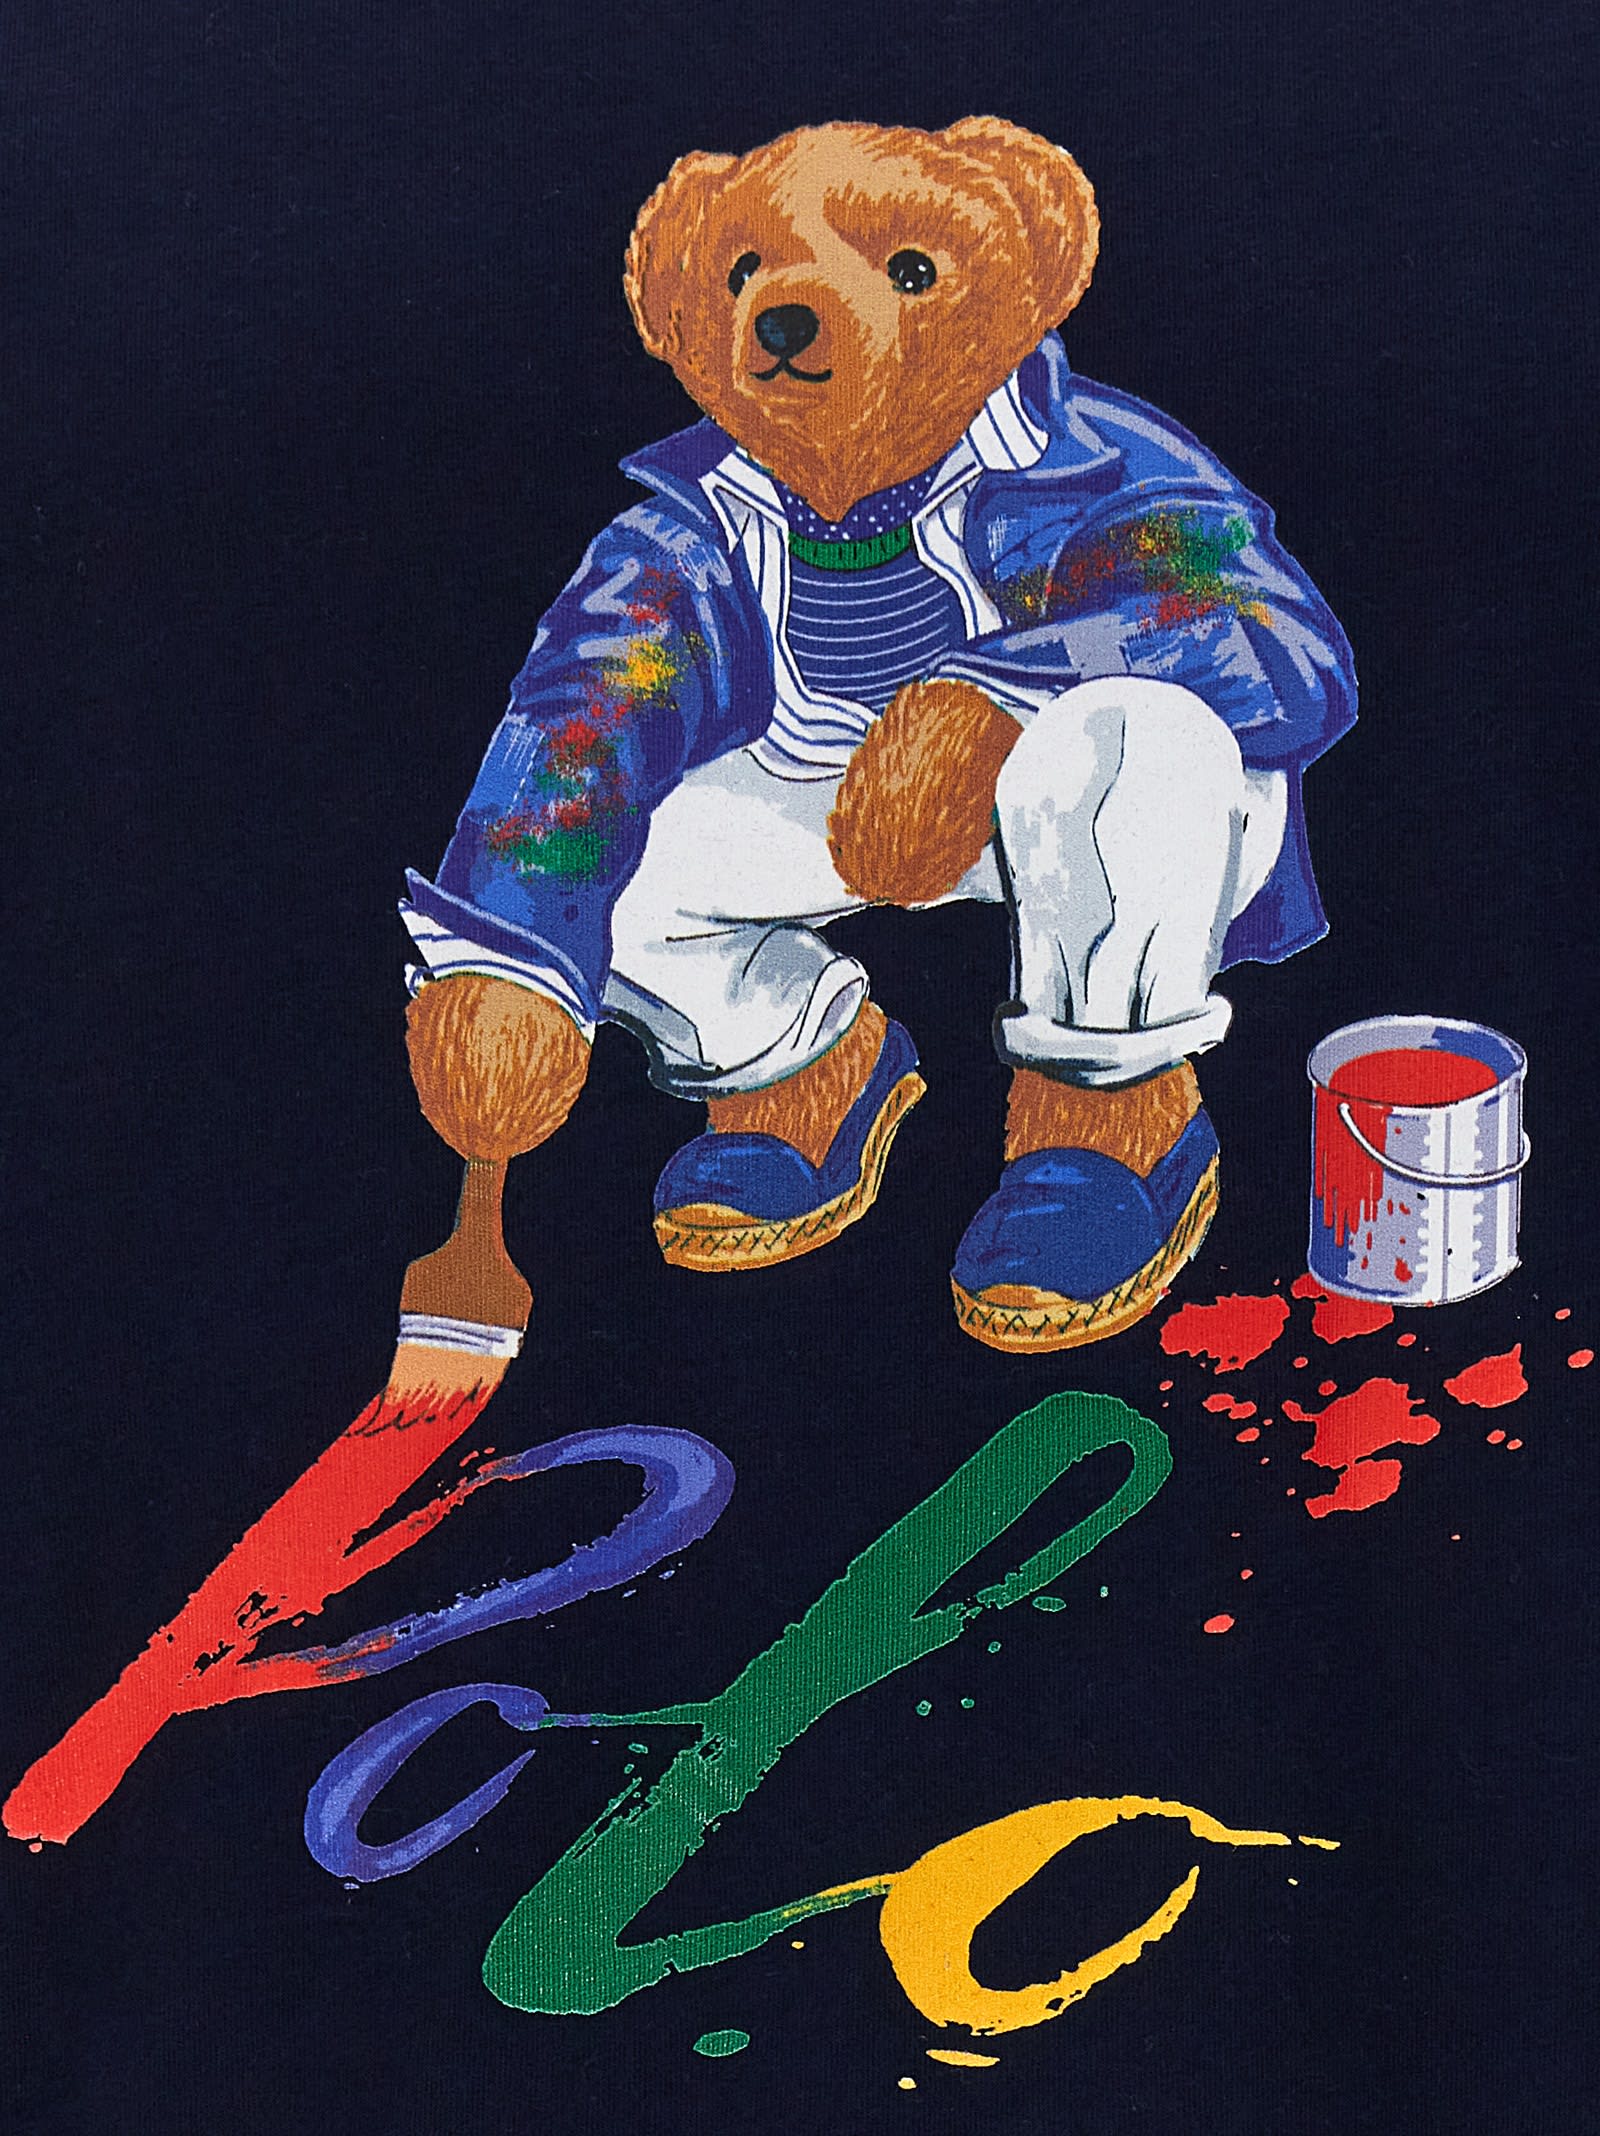 Shop Ralph Lauren Polo Bear T-shirt In Navy